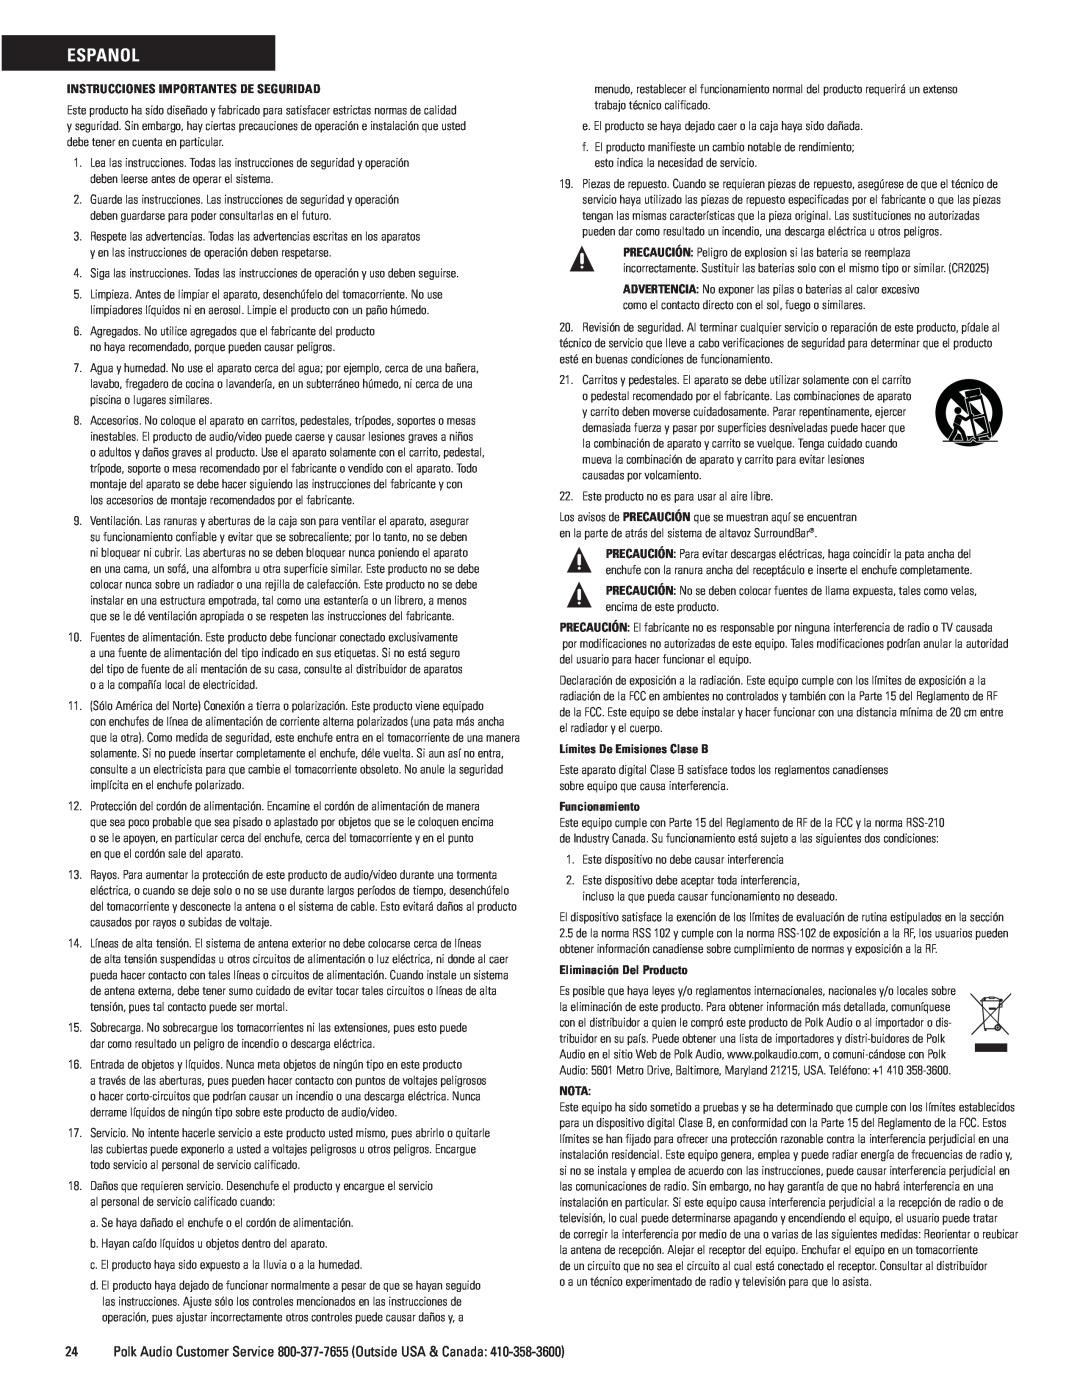 Polk Audio 9000 manual Espanol, Instrucciones Importantes De Seguridad, Límites De Emisiones Clase B, Funcionamiento, Nota 